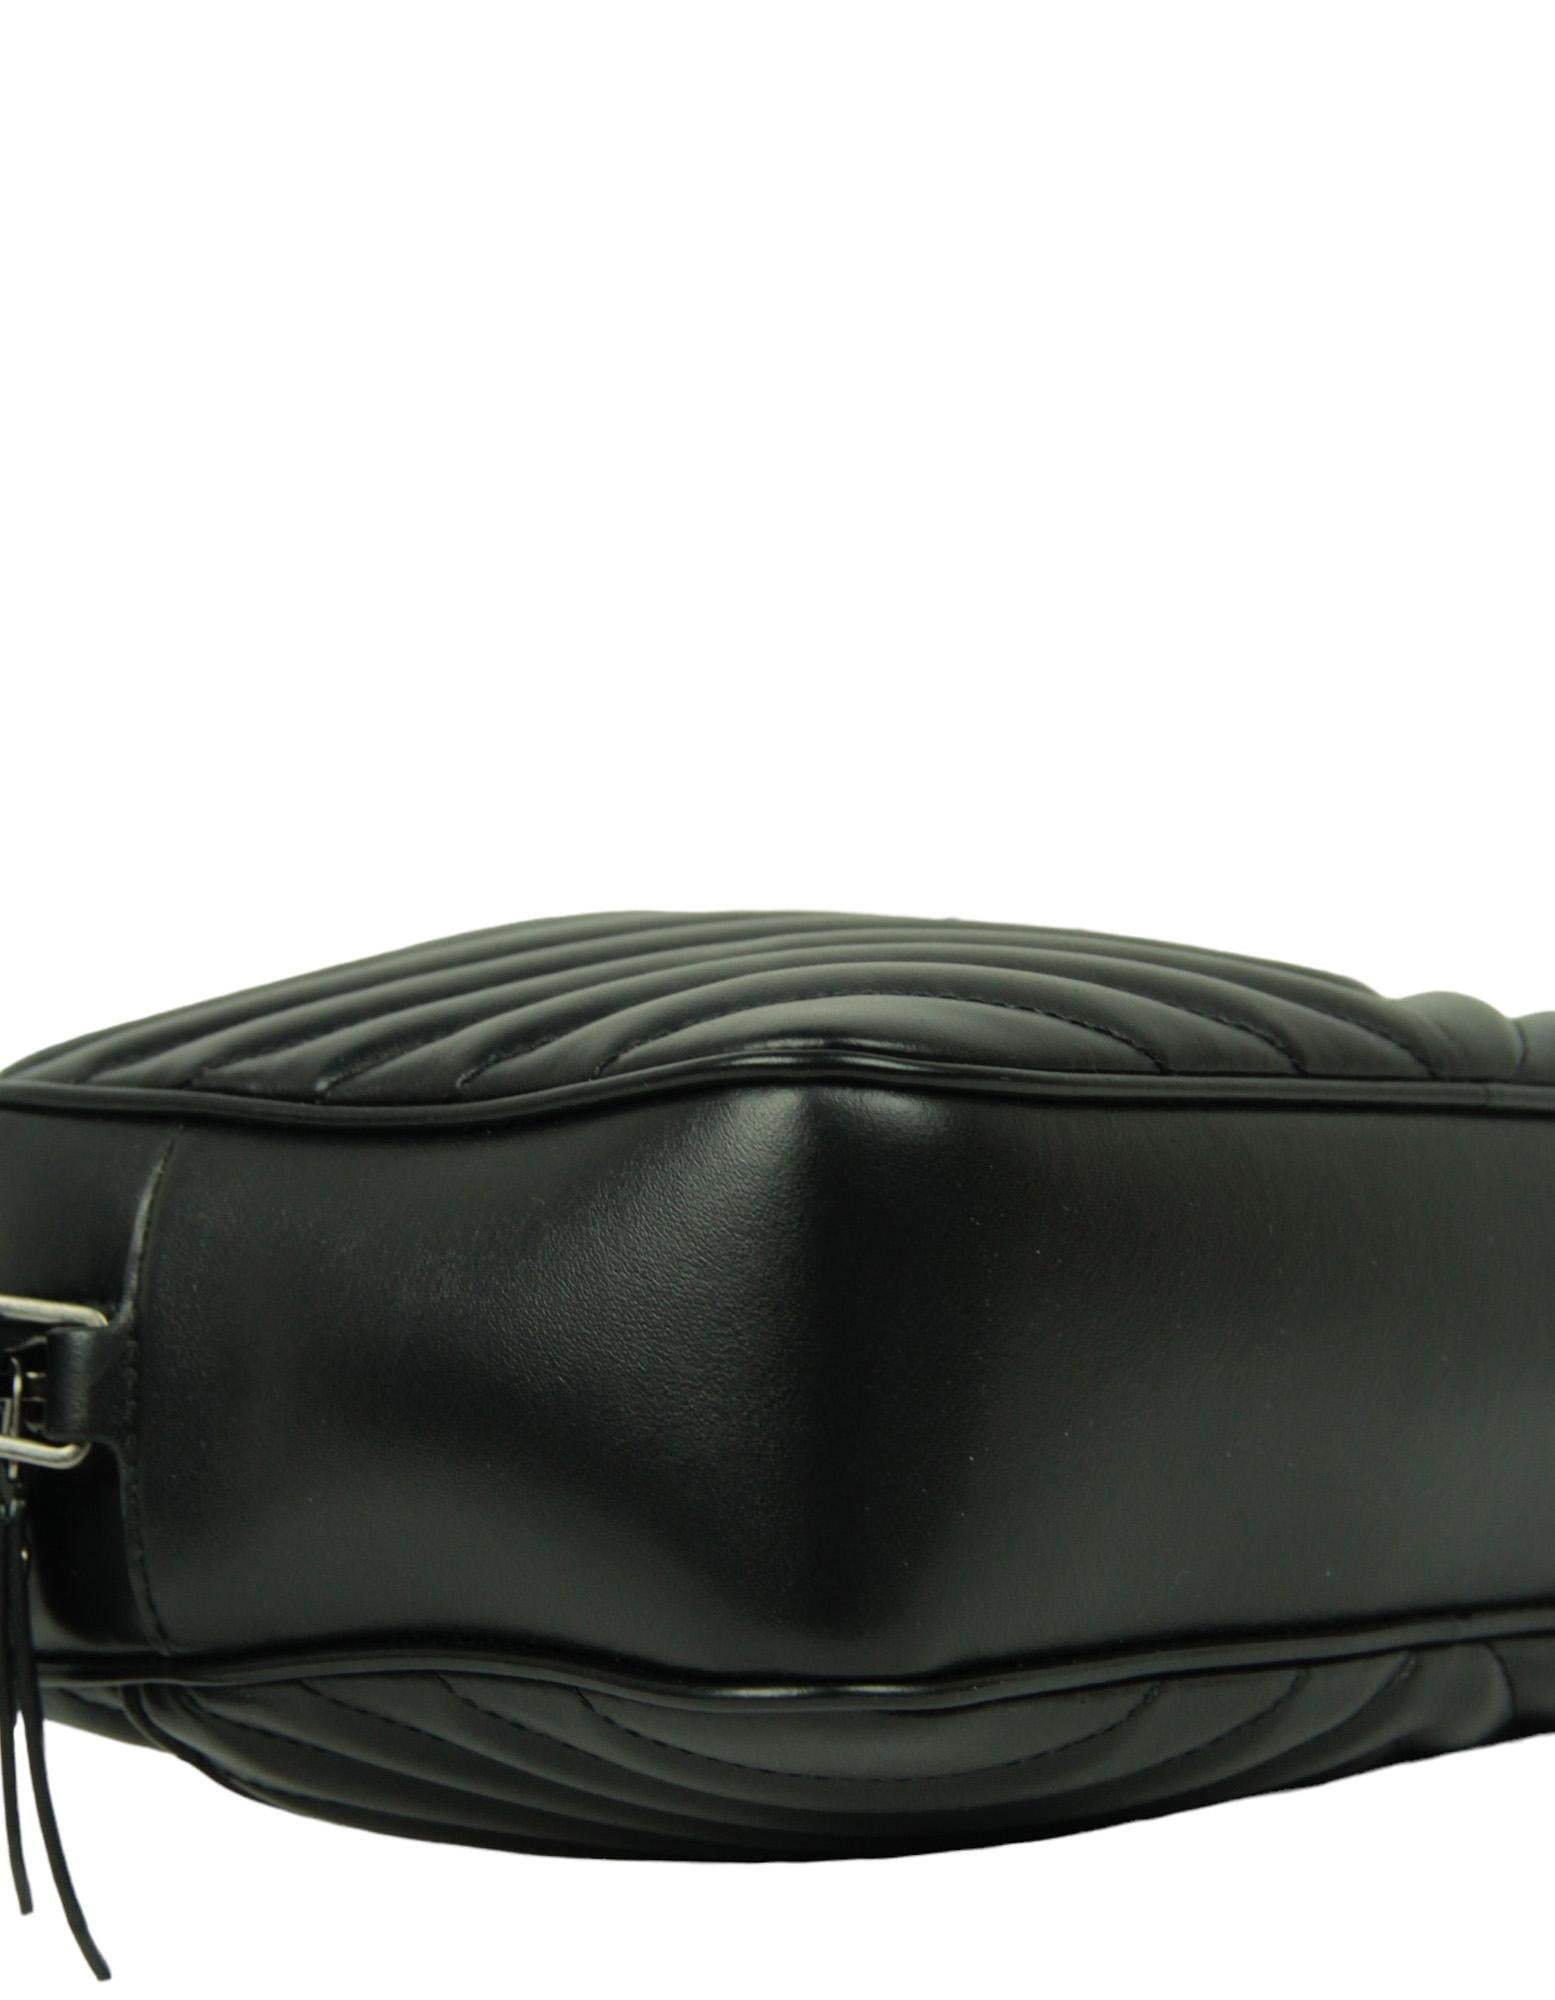 Women's Saint Laurent Black Calfskin Matelasse Monogram Lou Camera Bag For Sale